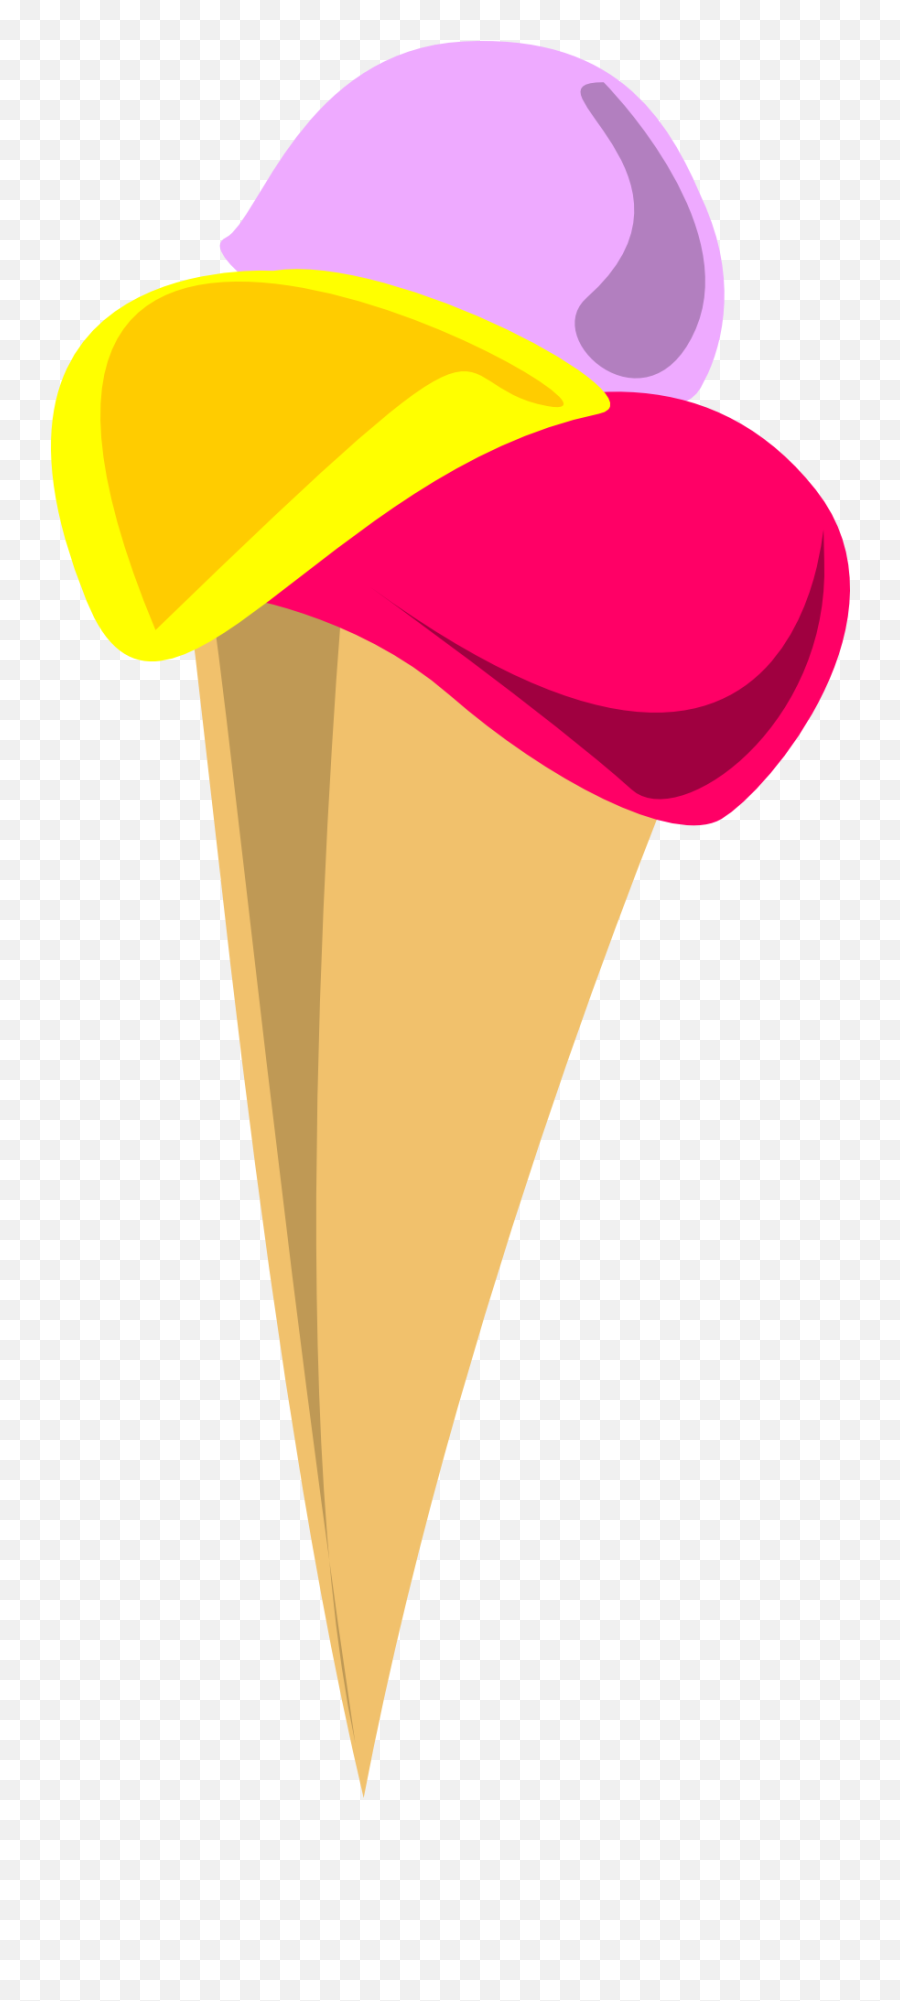 Ice Cream Balls In The Cone Clipart - Eis Clipart Emoji,Cone Clipart